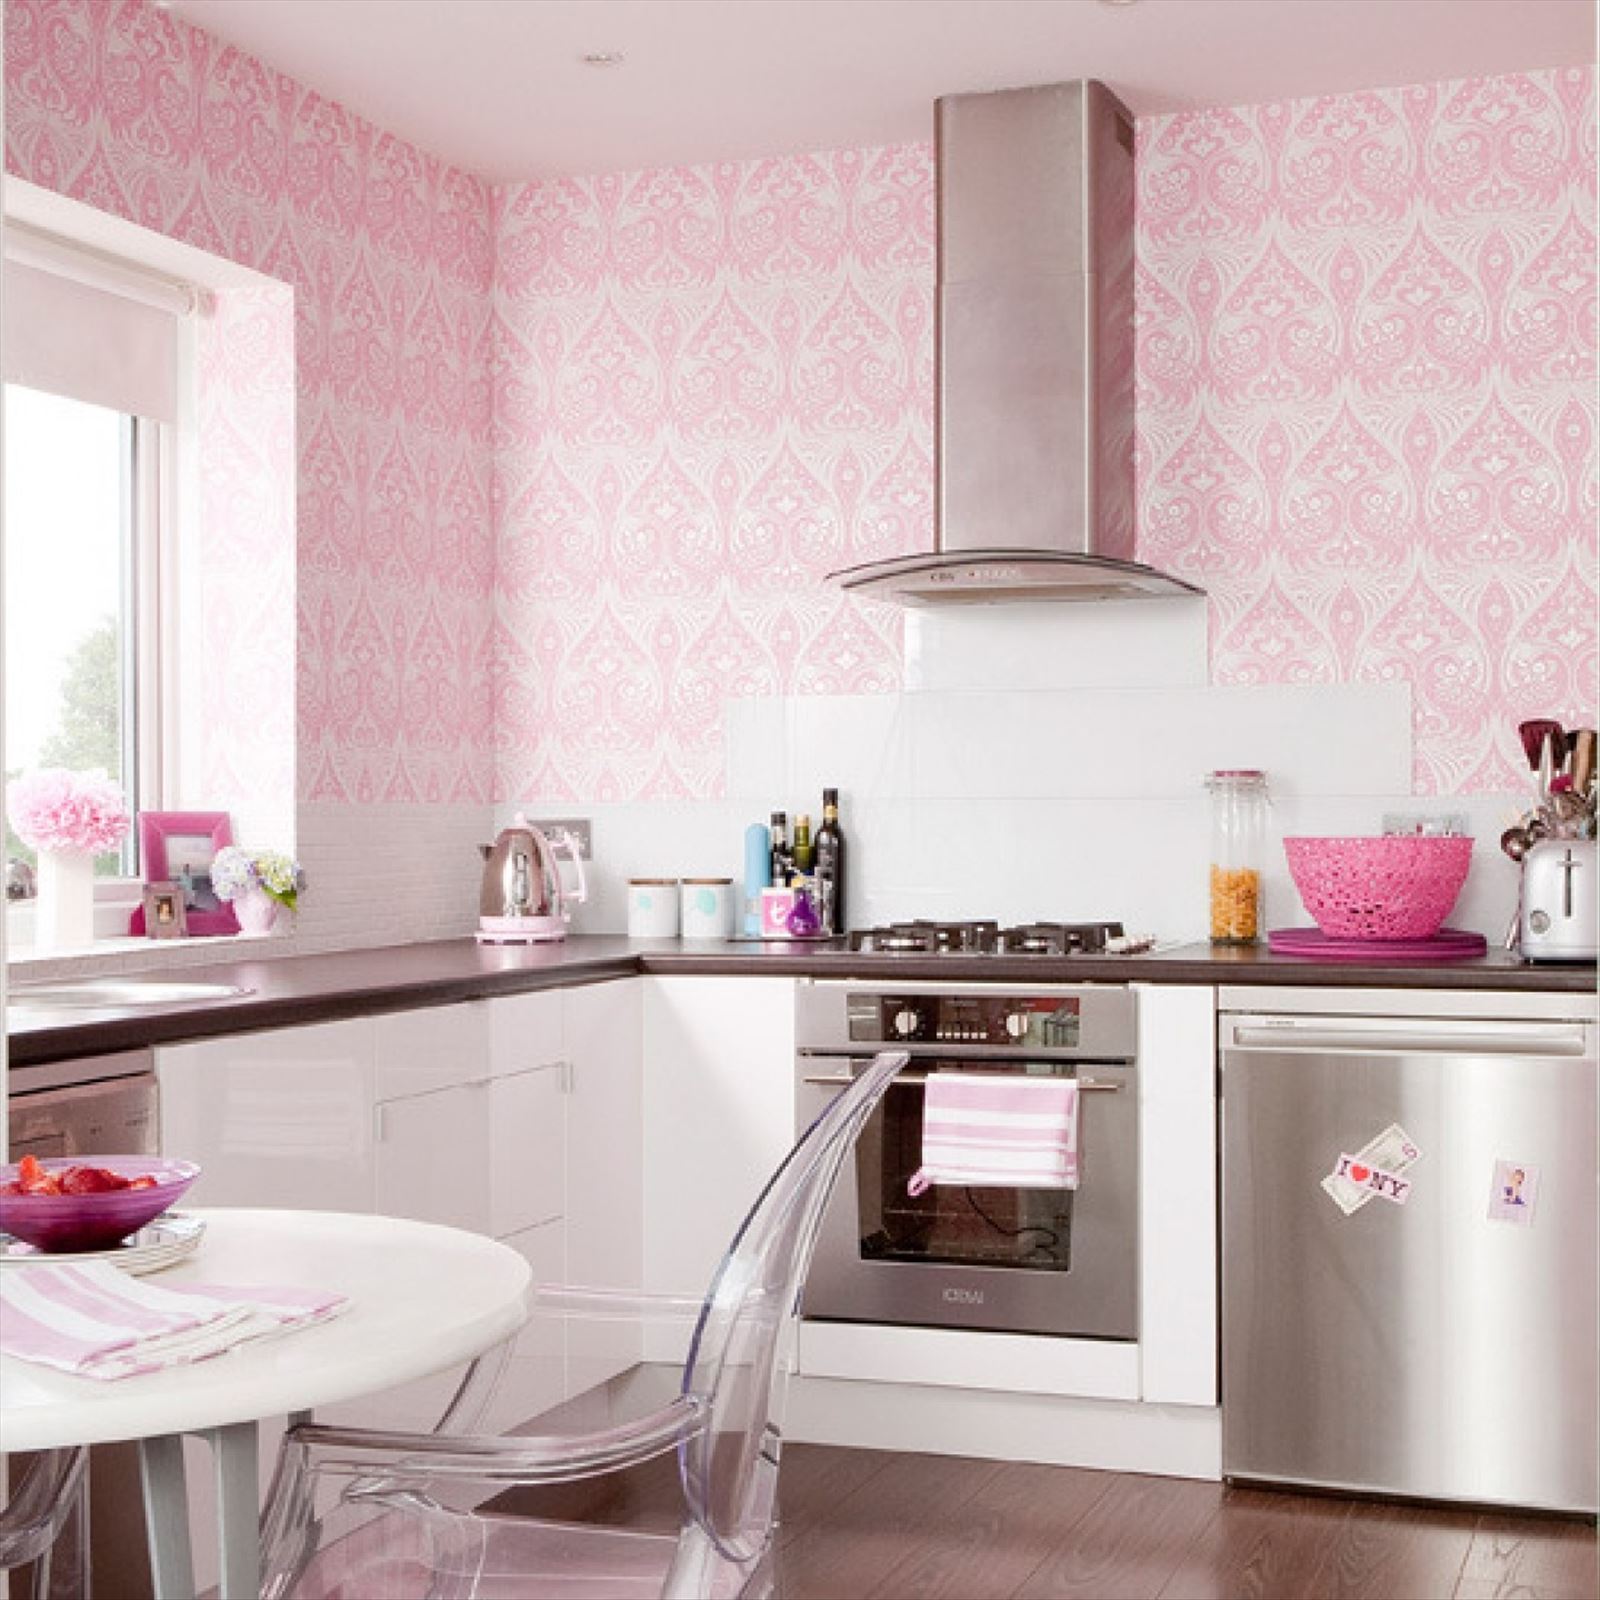 Обои в кухню спб. Розовая кухня в интерьере. В ореховом цвете кухня интерьер. Розовый цвет в интерьере кухни. Интерьер кухни в нежно розовых тонах.